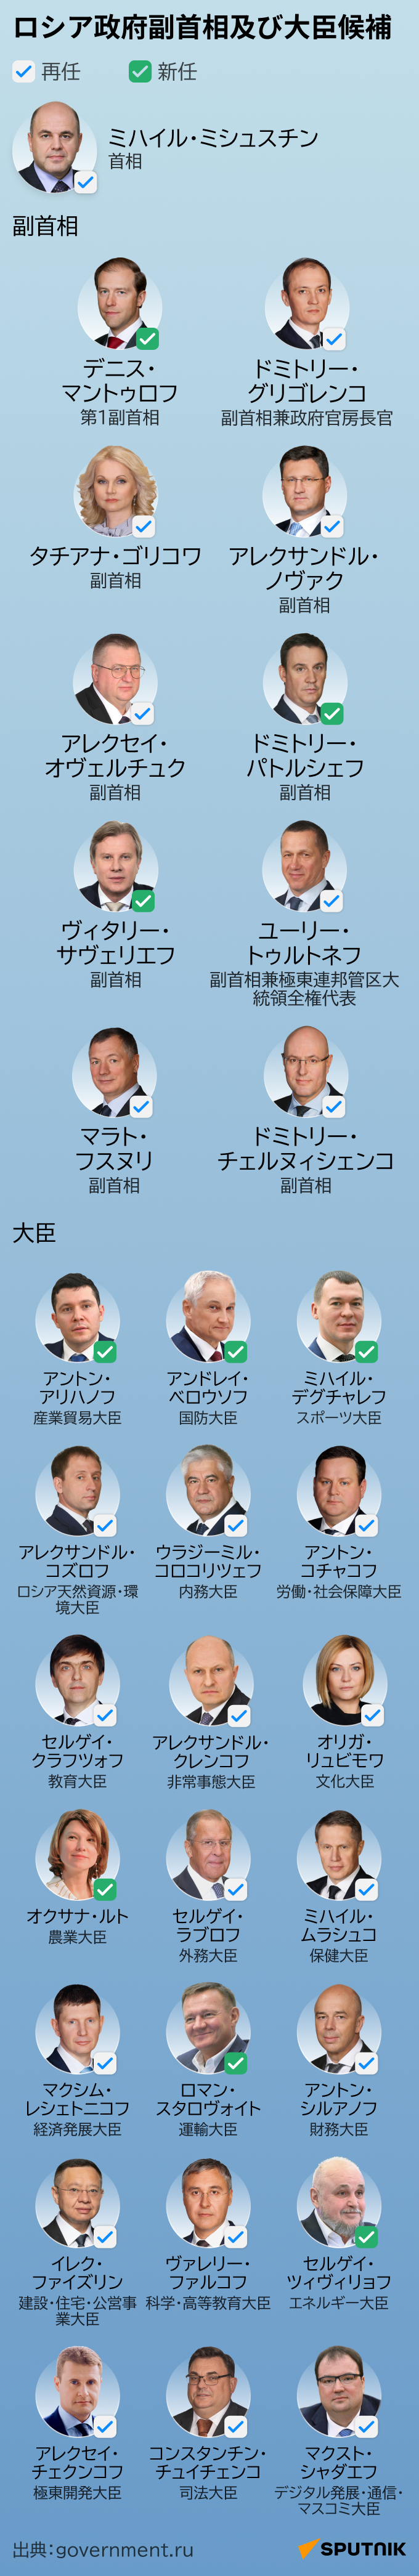 ロシア政府副首相及び大臣候補 - Sputnik 日本